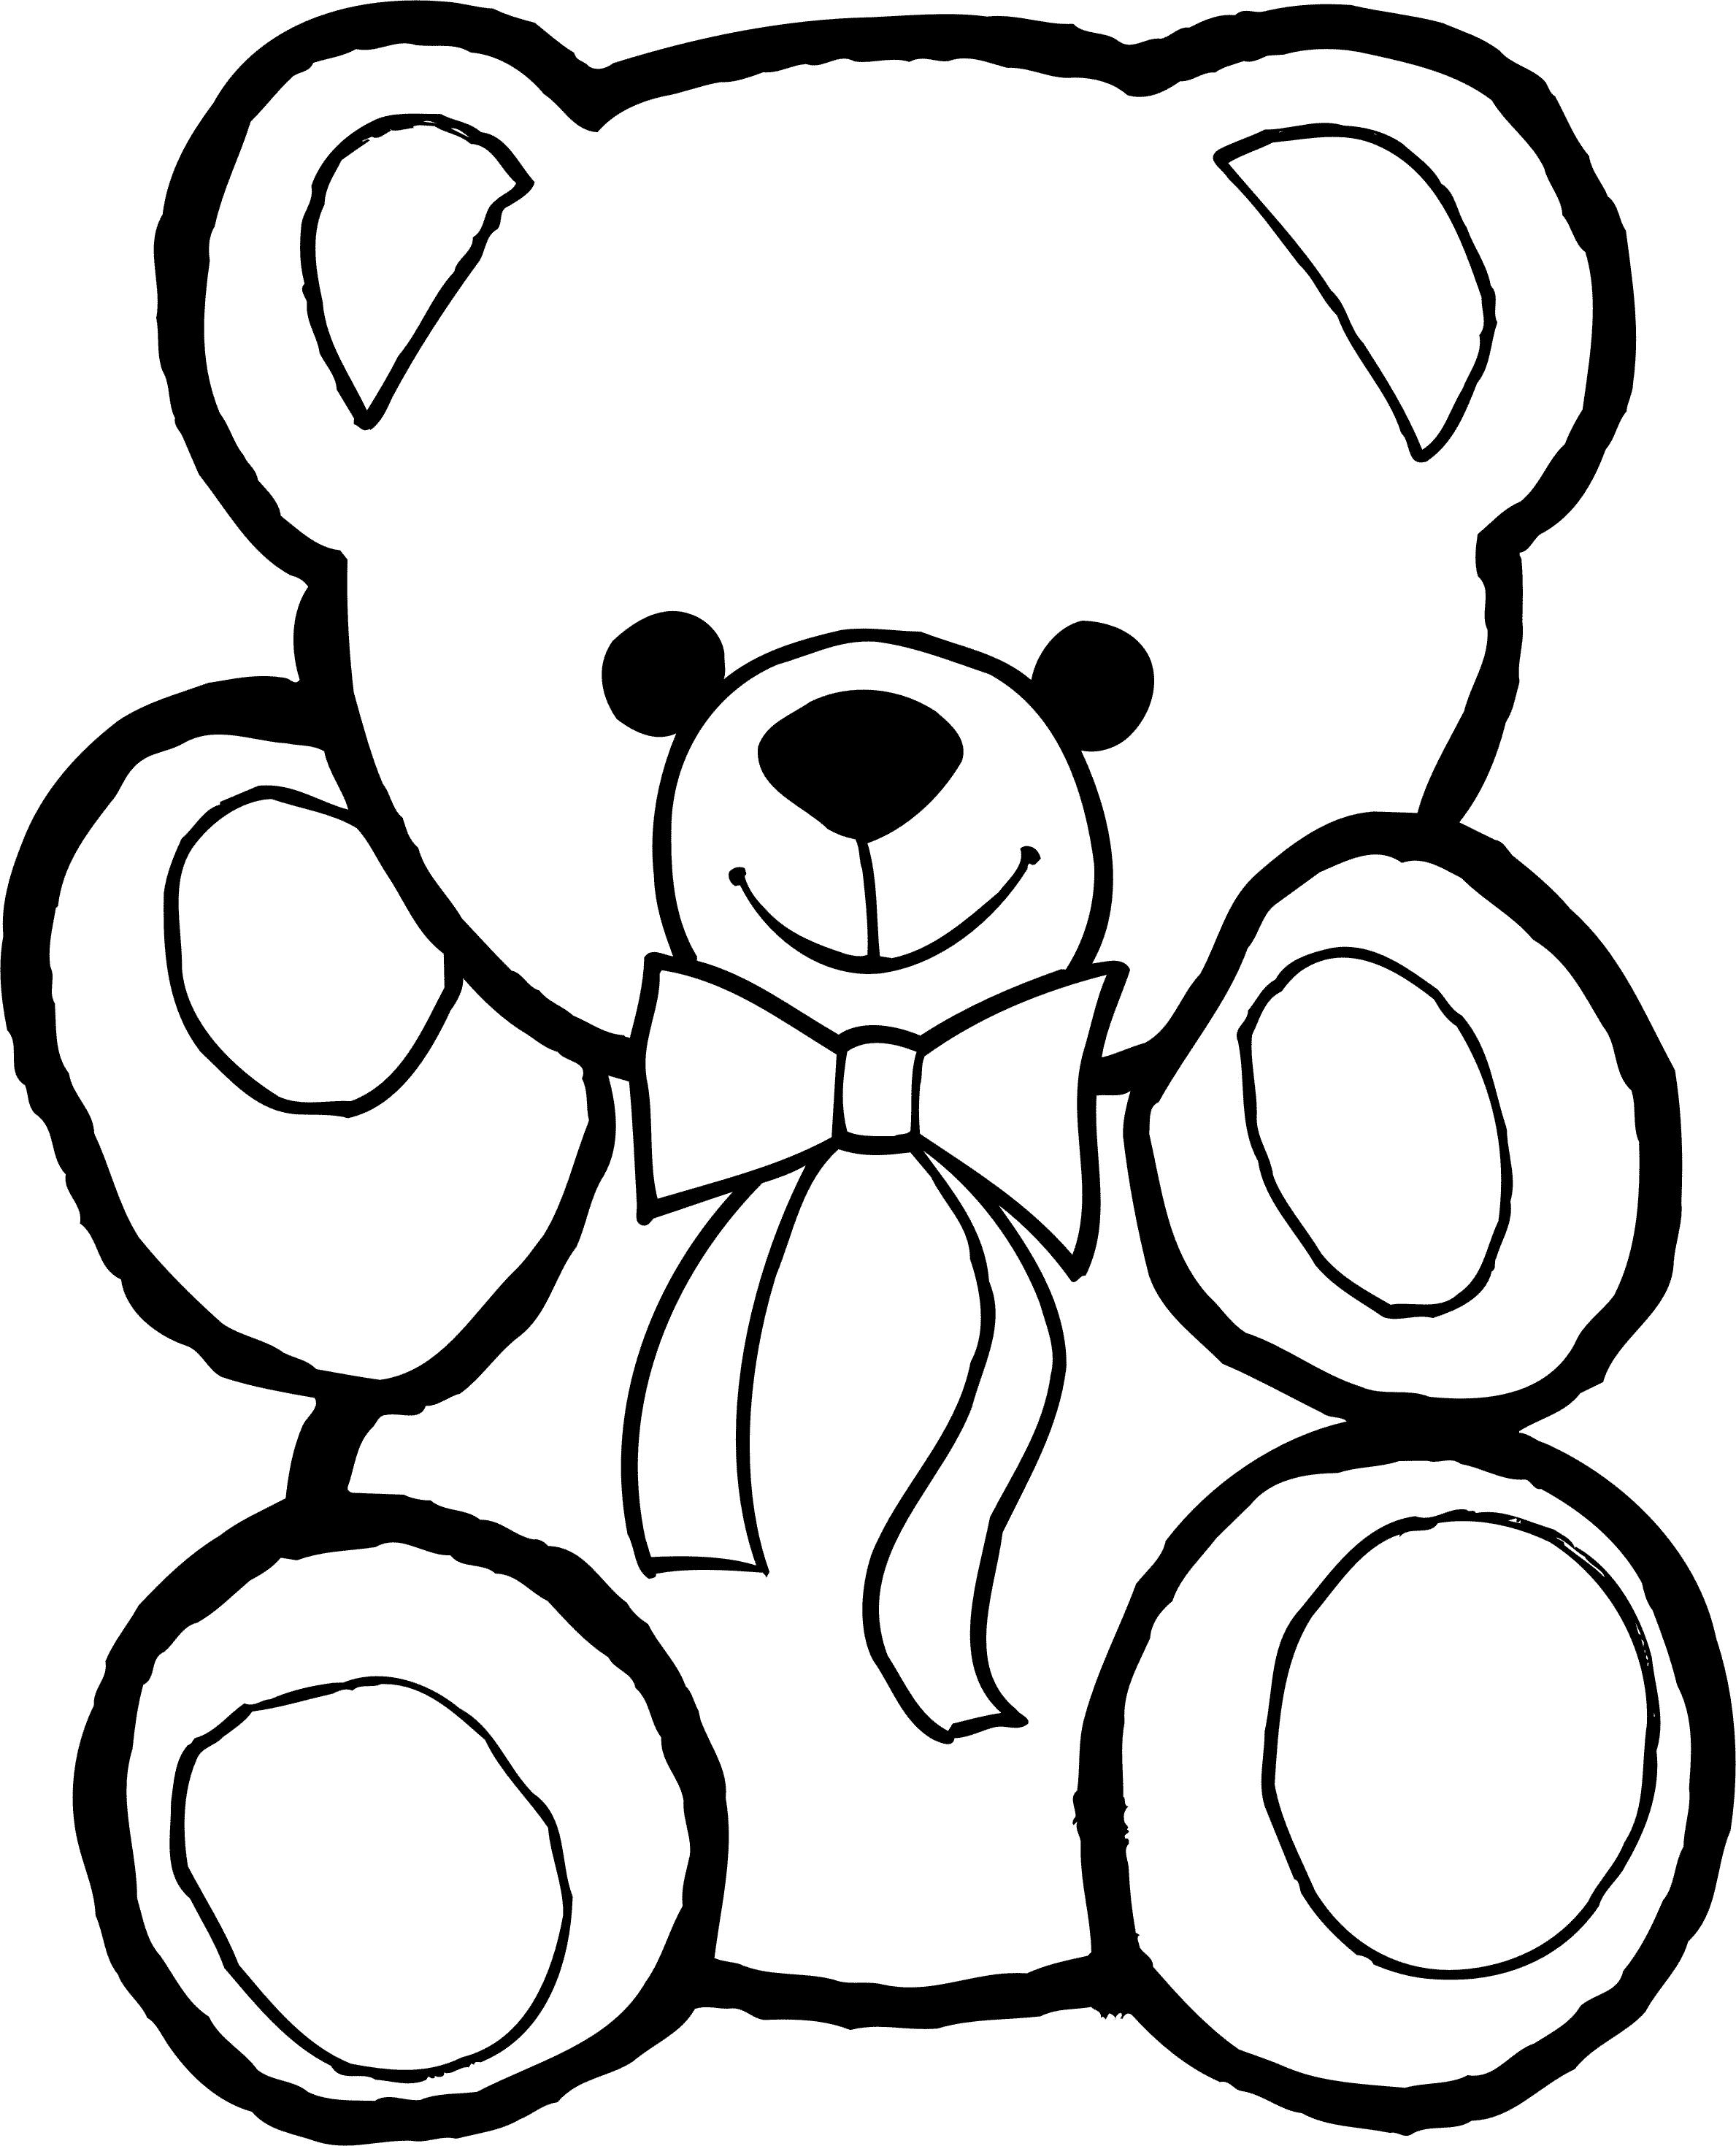  Раскраска для малыша с широким контуром мишка Тедди